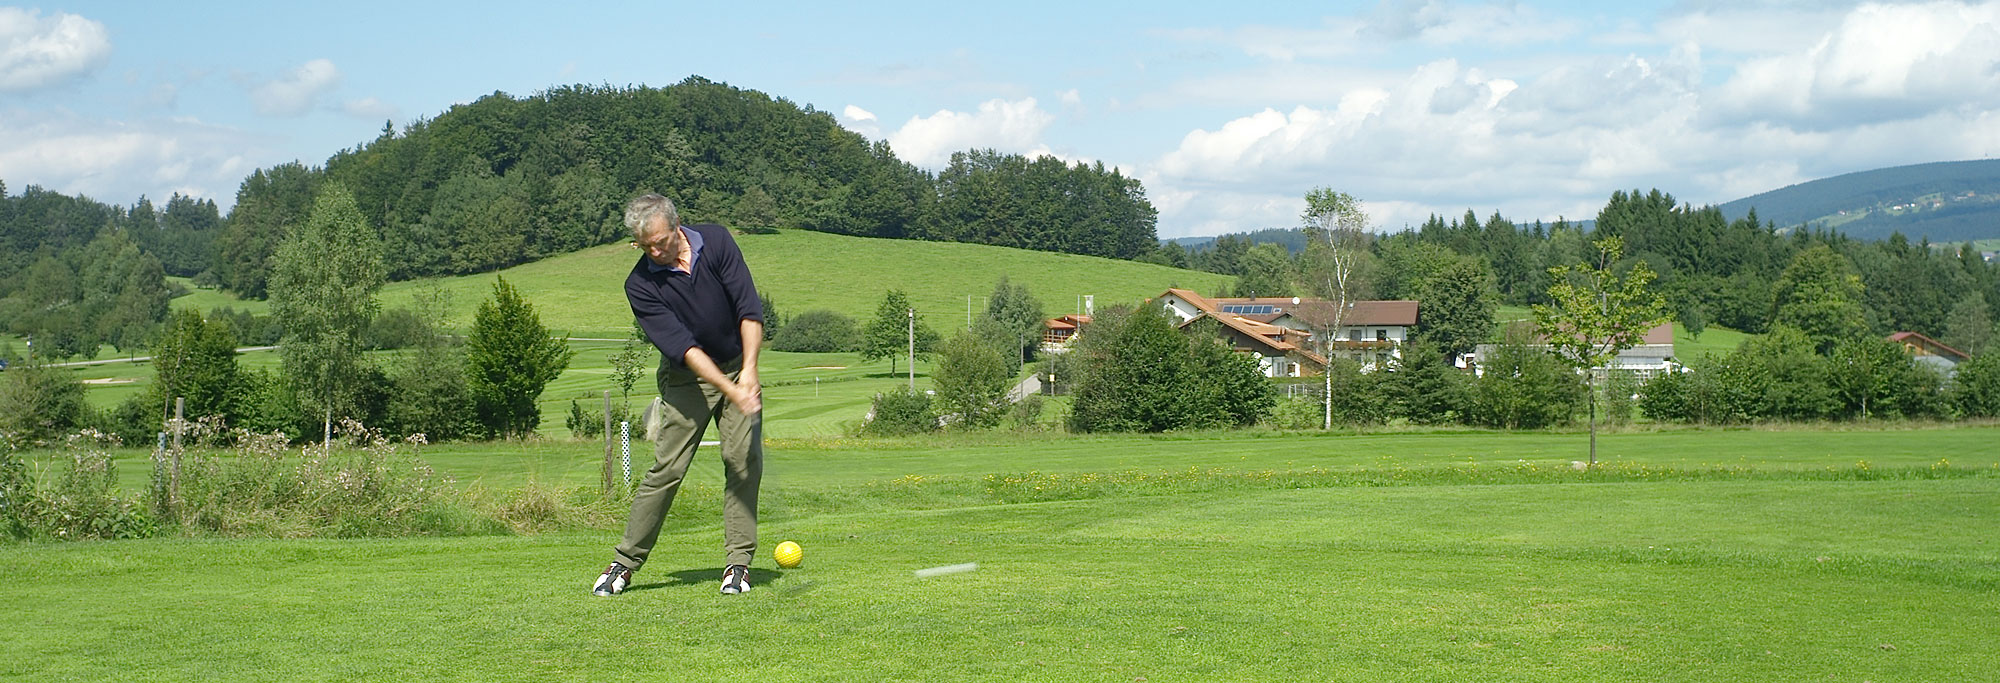 Wandern, Reiten und Golfspielen im Bayerischen Wald